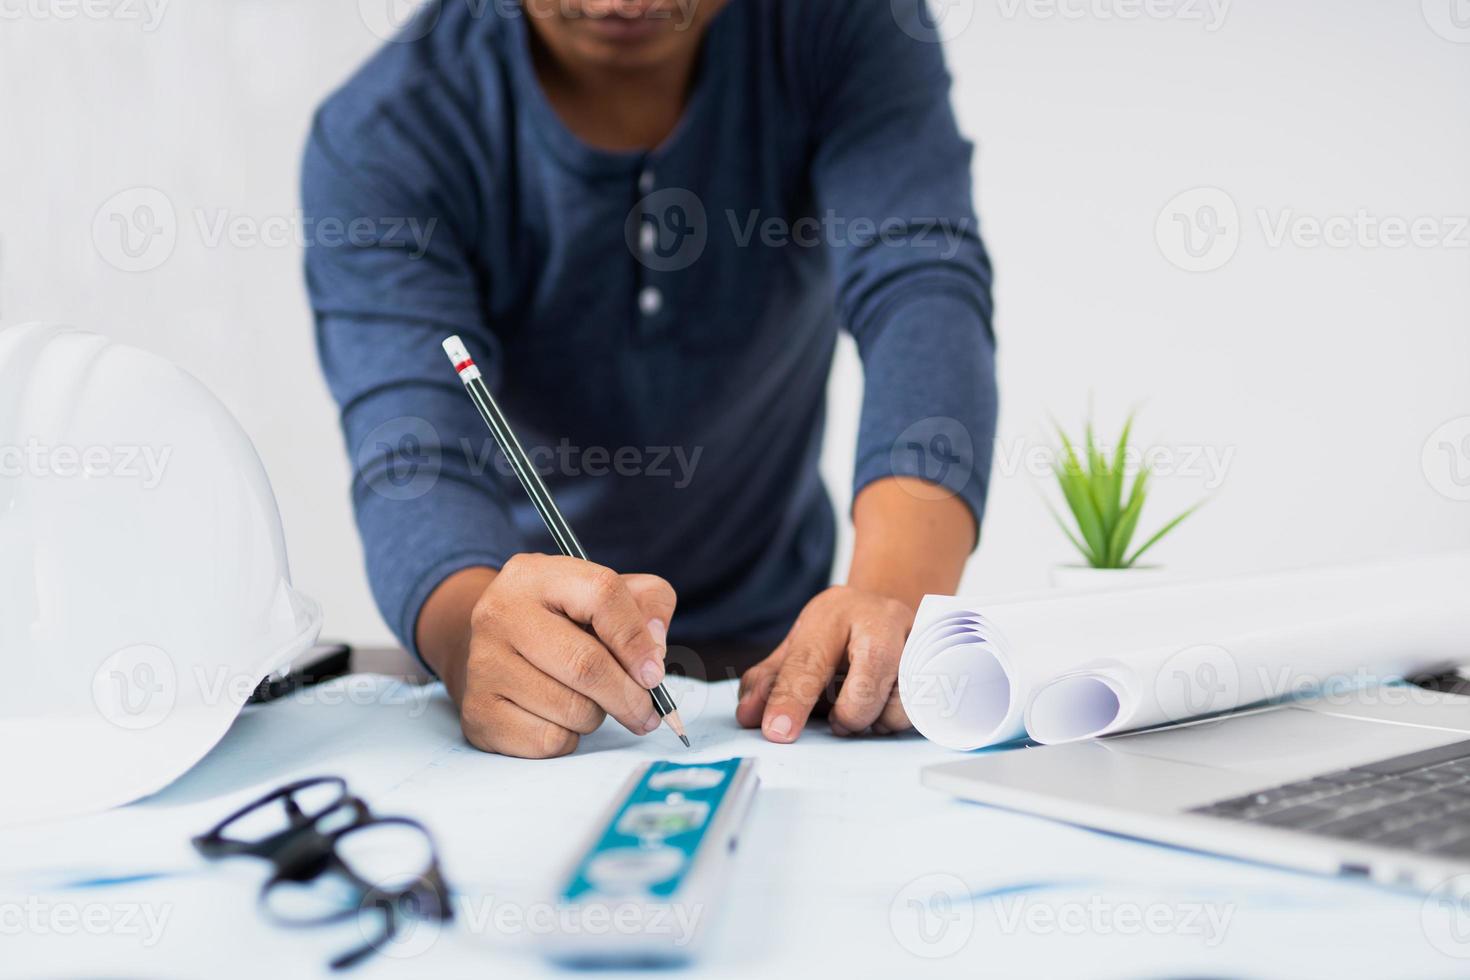 persoon die aan een blauwdruk werkt naast laptop en opgerold papier foto